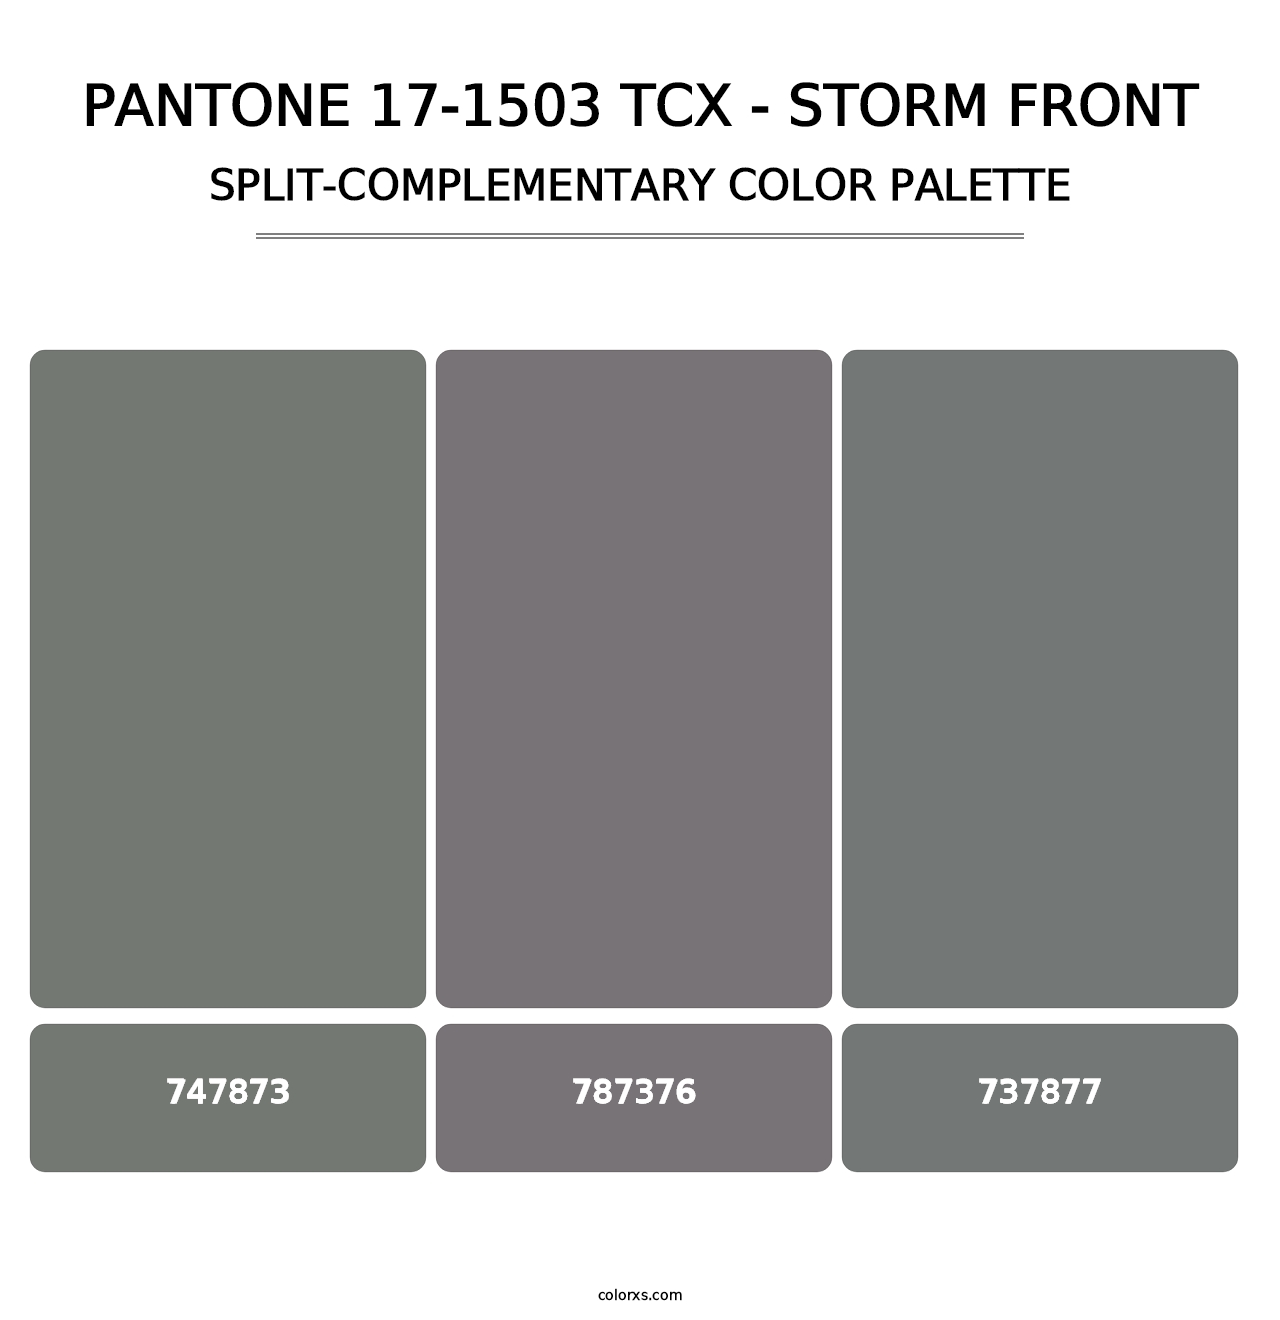 PANTONE 17-1503 TCX - Storm Front - Split-Complementary Color Palette